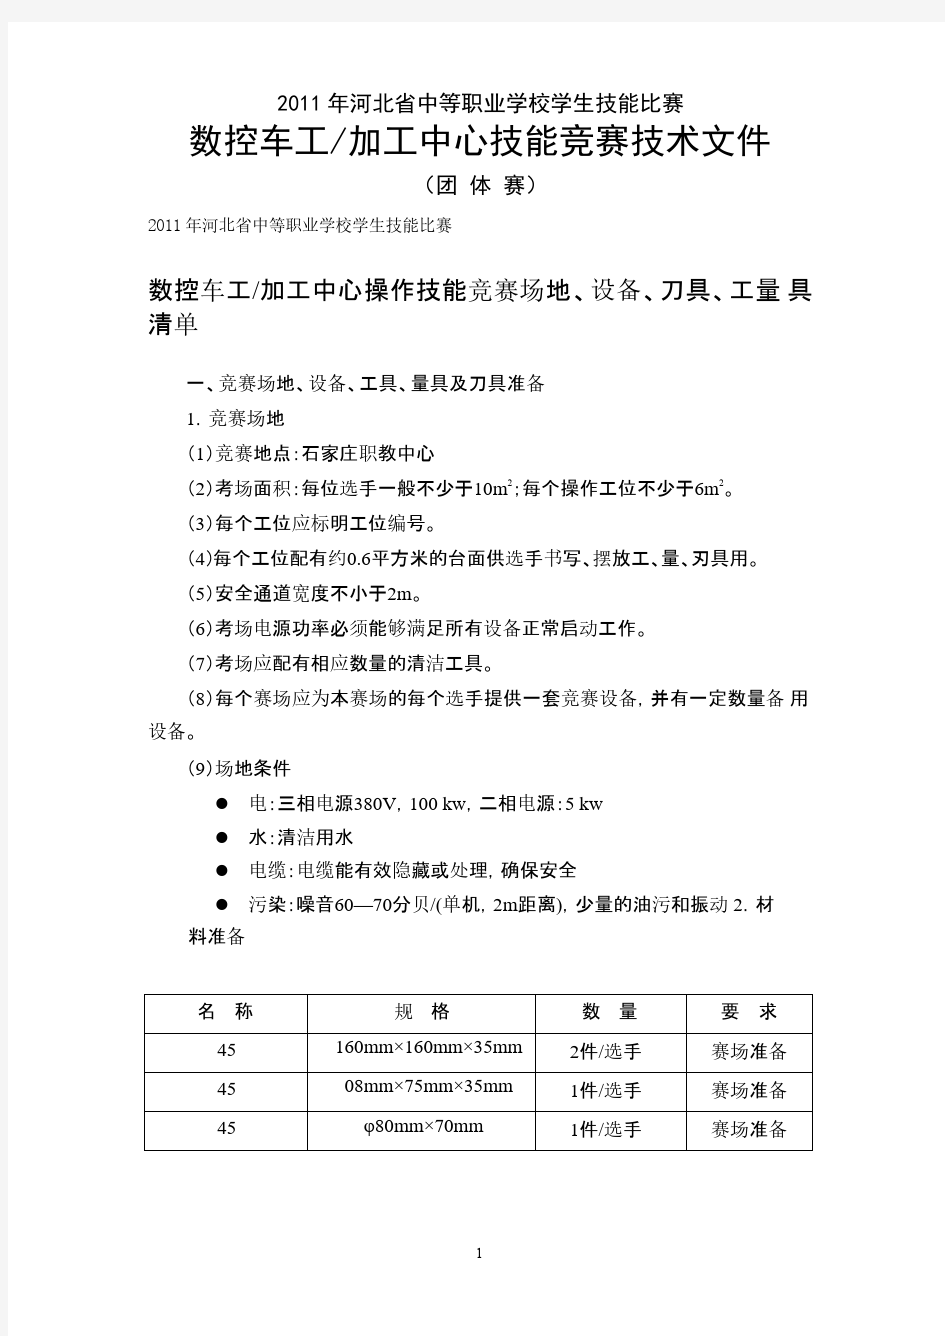 河北省技能大赛数控车加工中心整体图纸及备料清单